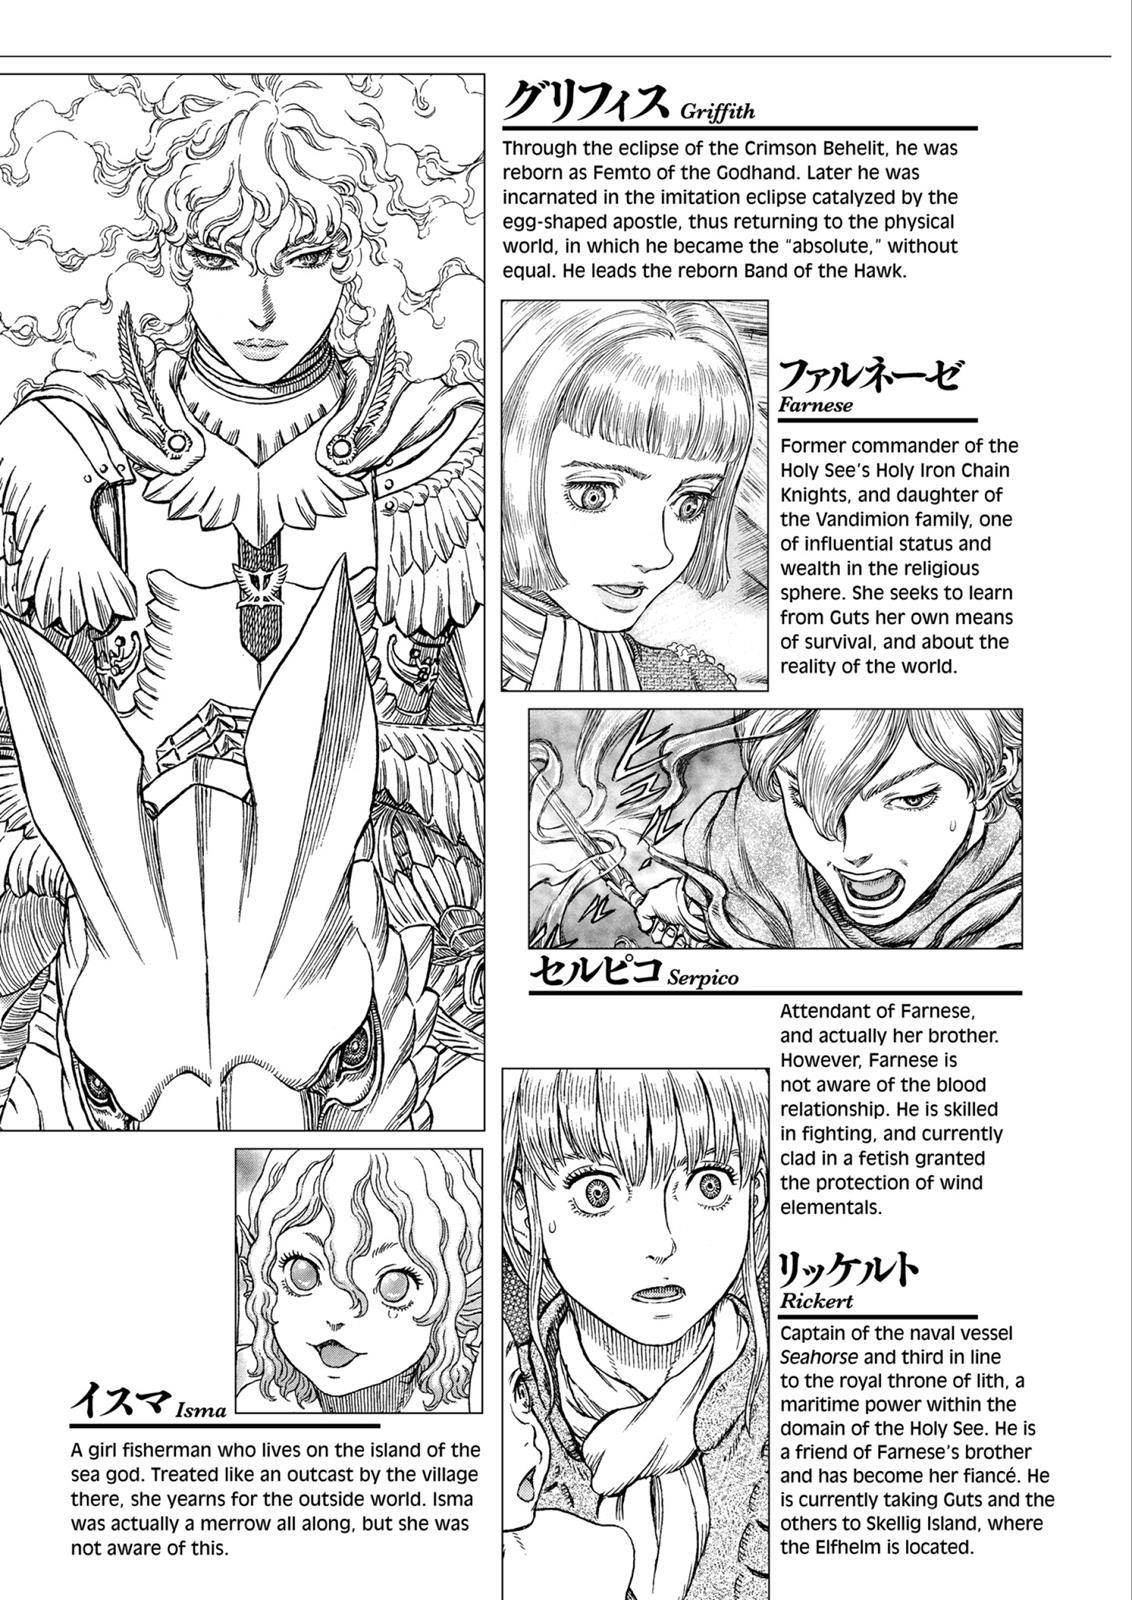 Berserk Manga Chapter 325 image 09